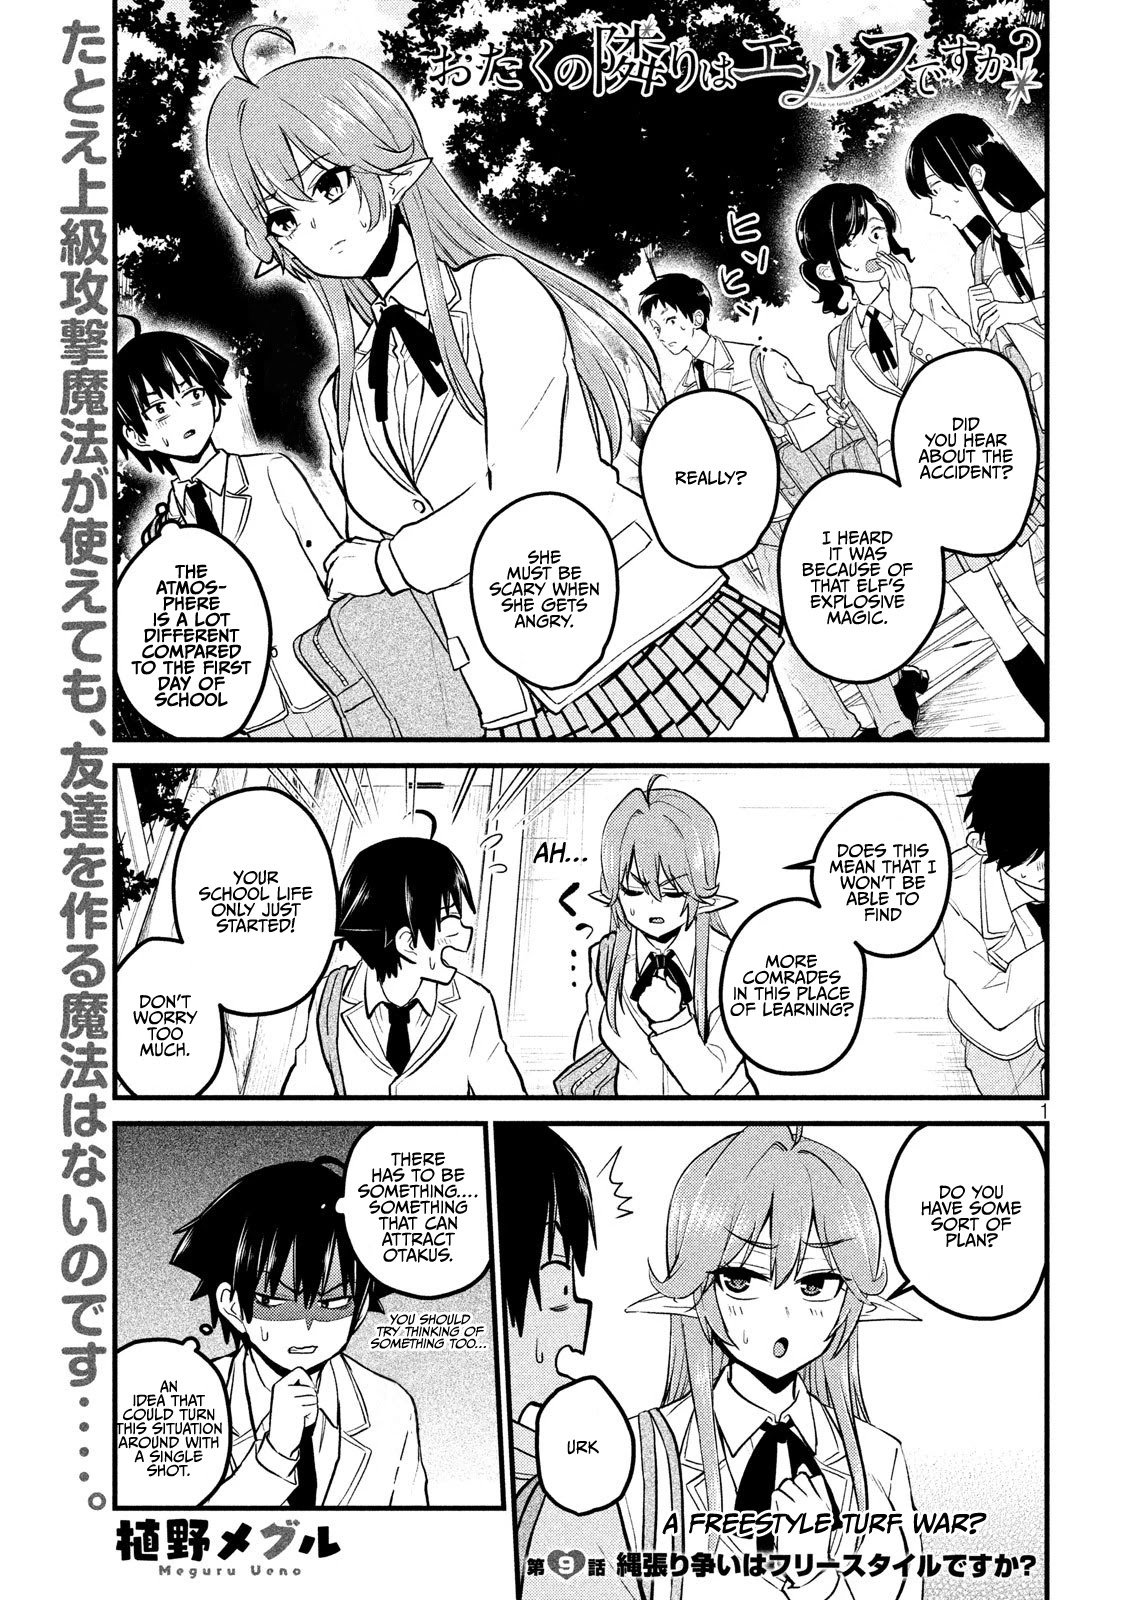 Otaku no Tonari wa ERUFU Desuka? - Chapter 9 Page 1